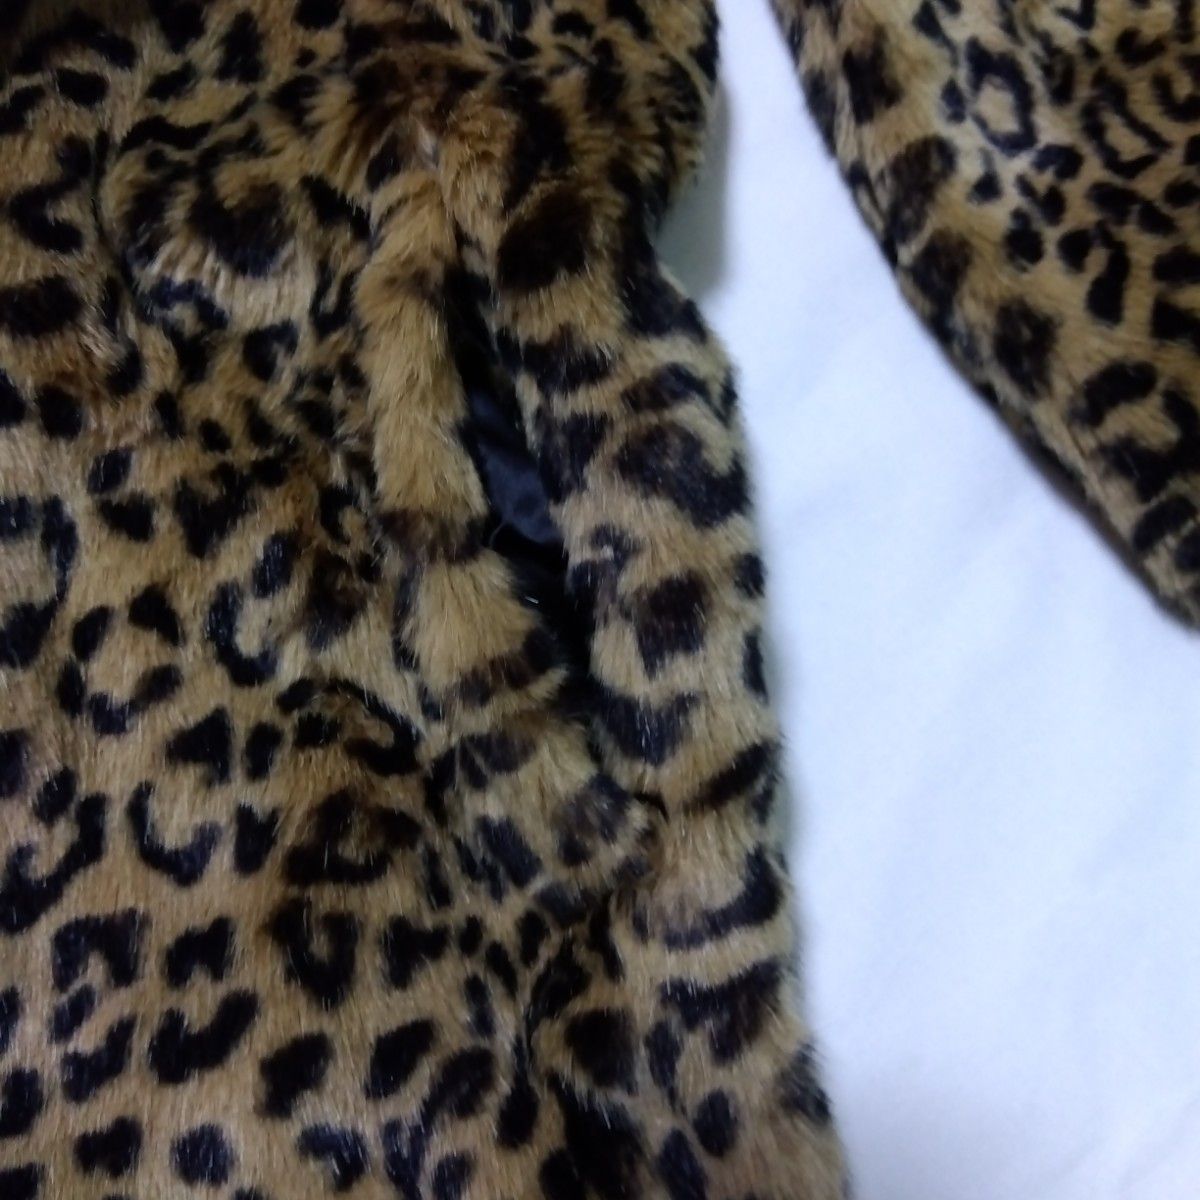 【新品・未使用】ZARA Trafaluc outerwear　レオパード　豹柄　フェイクファーコート　Lサイズ